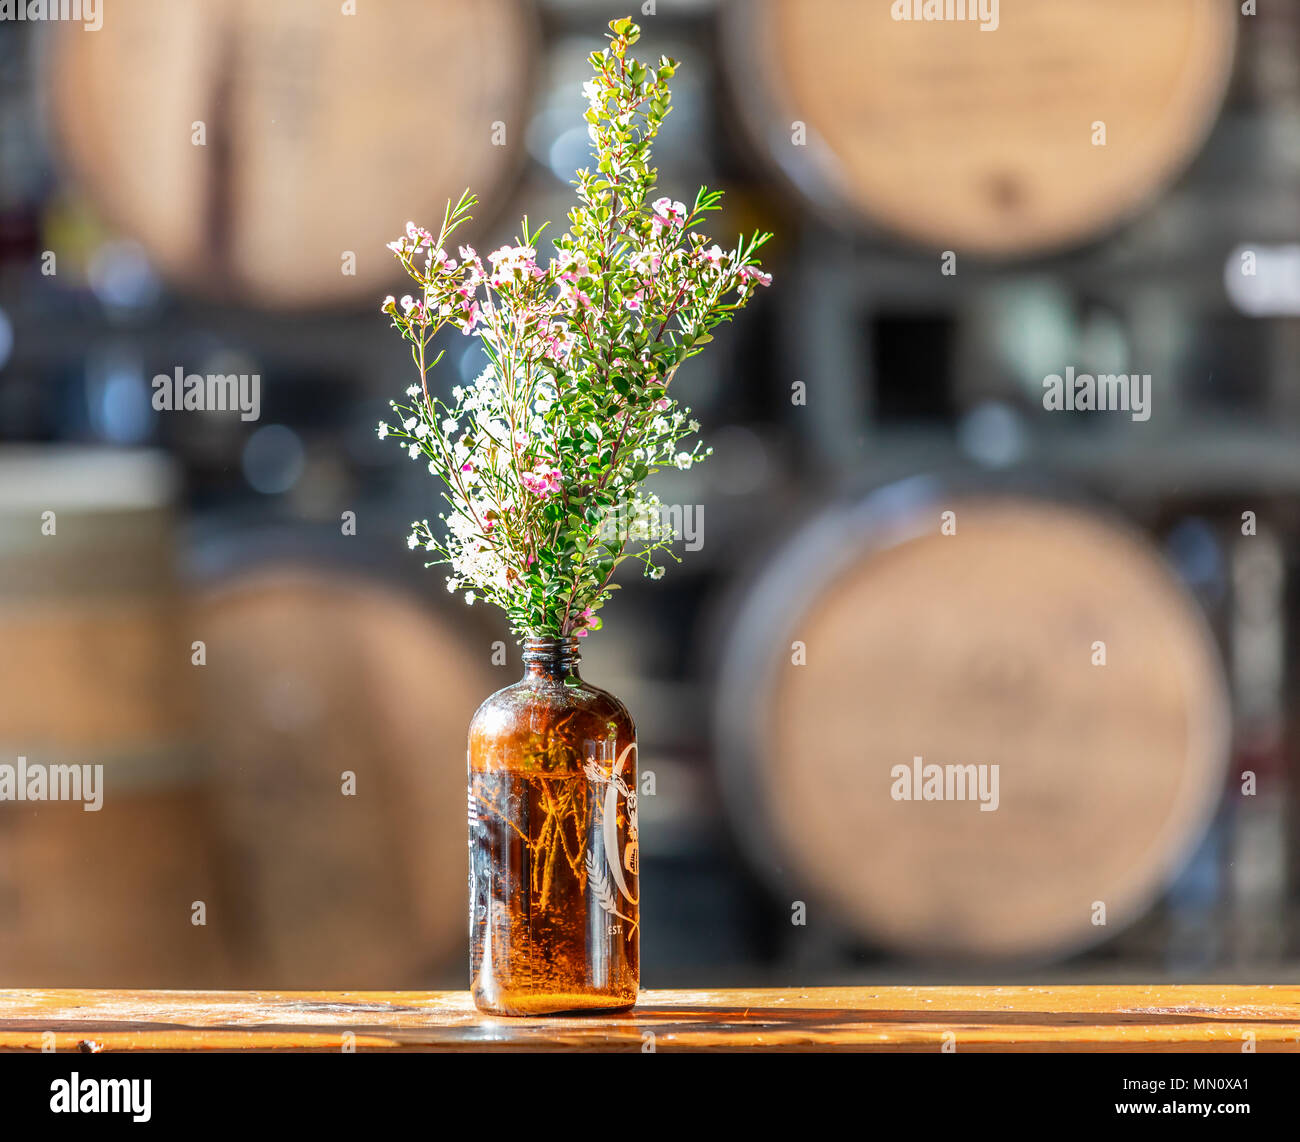 Frisches Wild wachsende Blumen in einer braunen Flasche mit grossen Fässer im Hintergrund Stockfoto